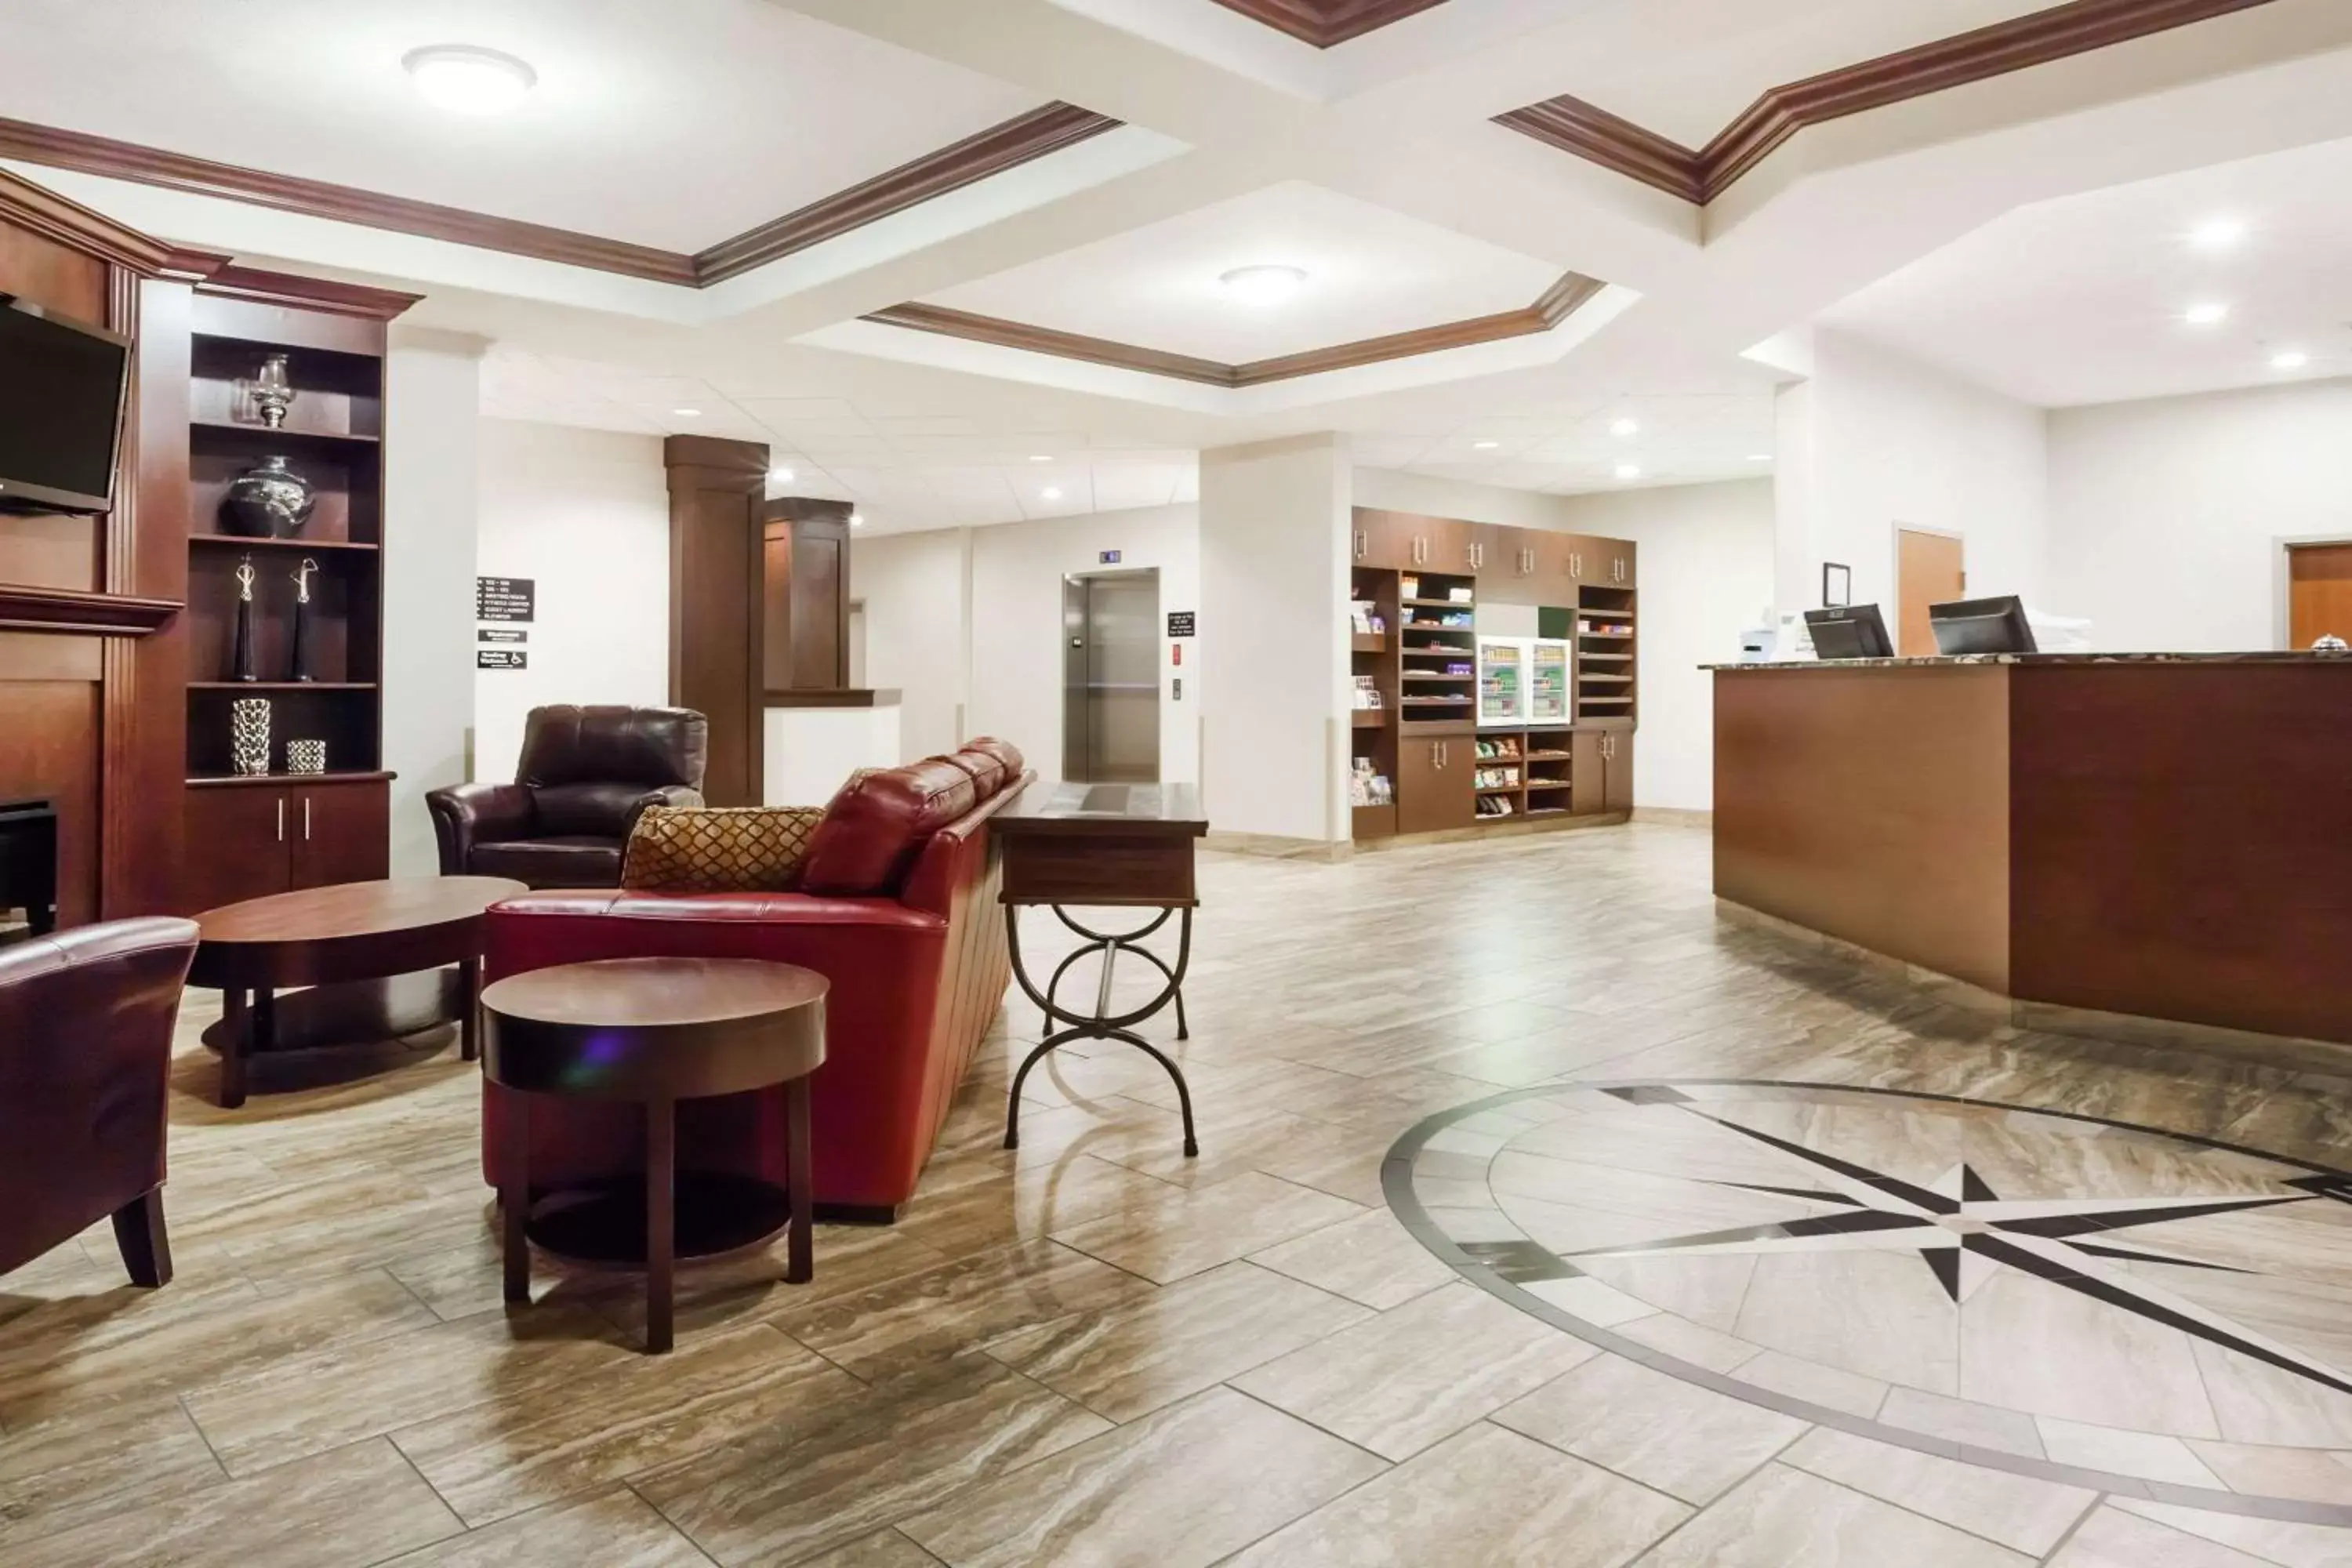 Lobby or reception, Lobby/Reception in Ramada by Wyndham Creston